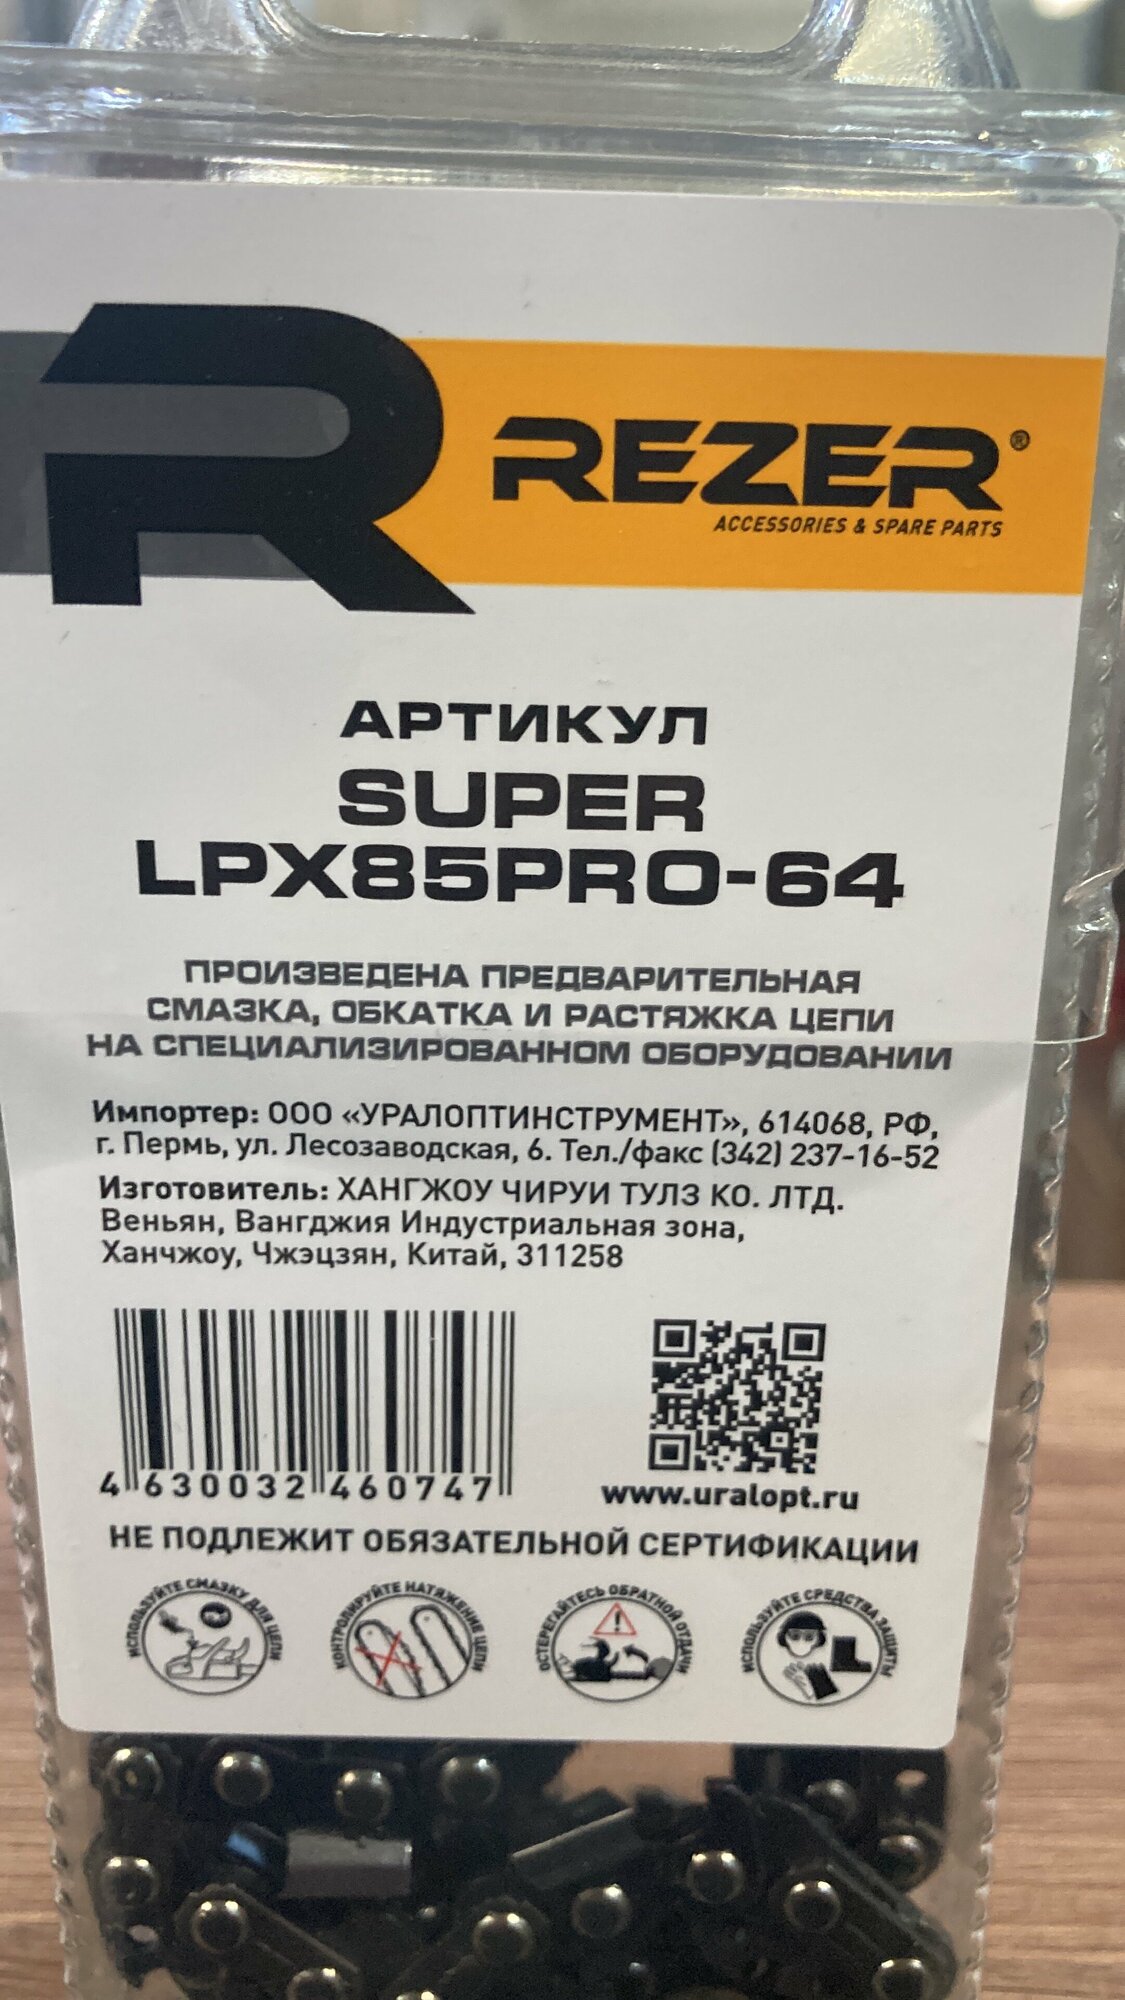 Цепь (0.325, 1.5 мм, 64 звена) Rezer SUPER LPX85PRO-64 03.025.00021